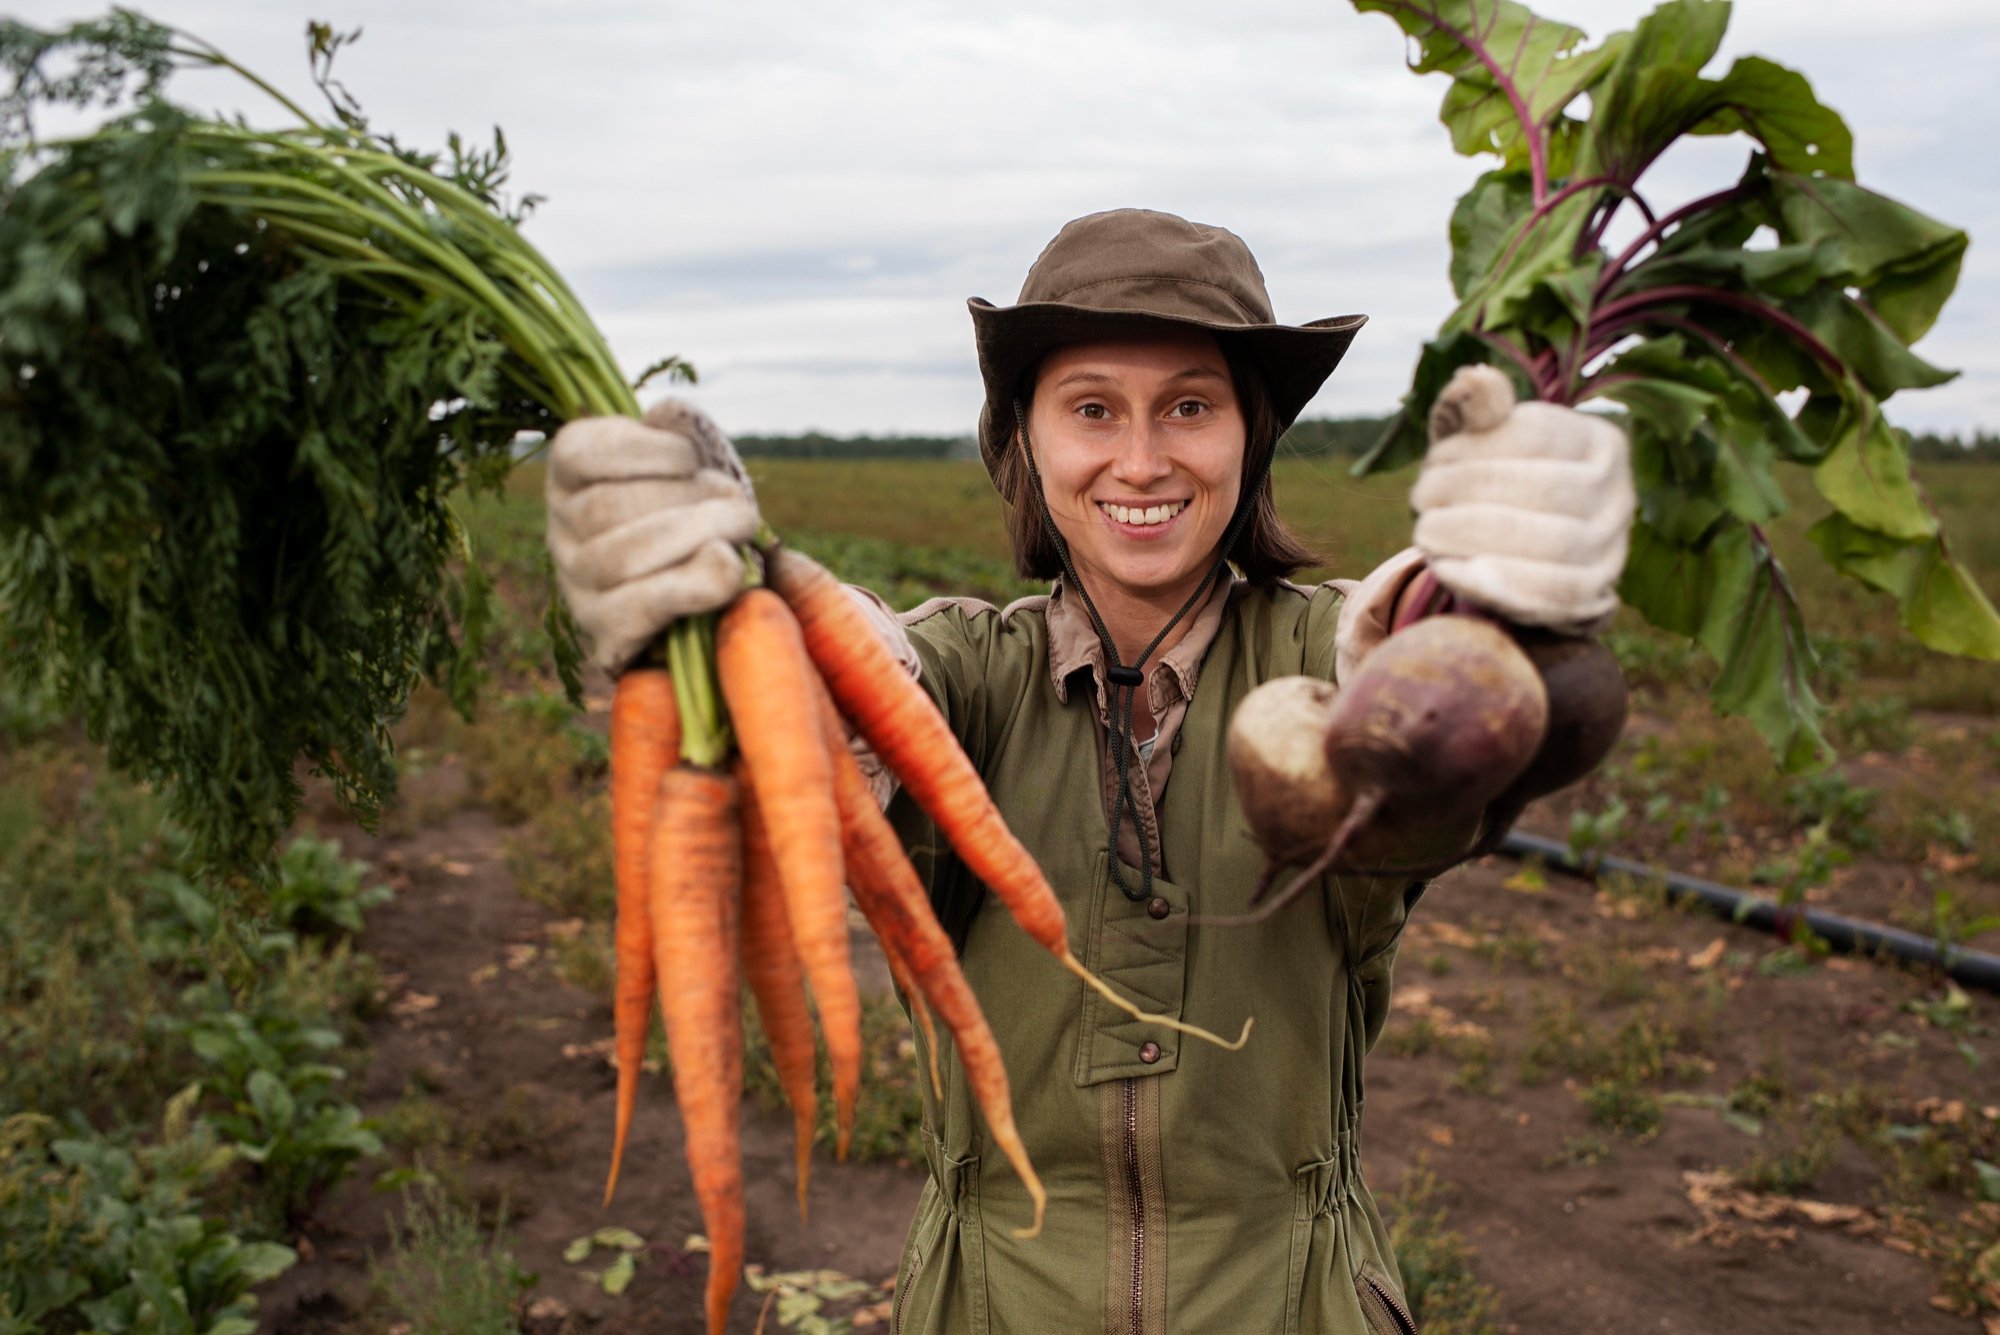 Експерти розповіли, чим підживити моркву для збільшення врожаю